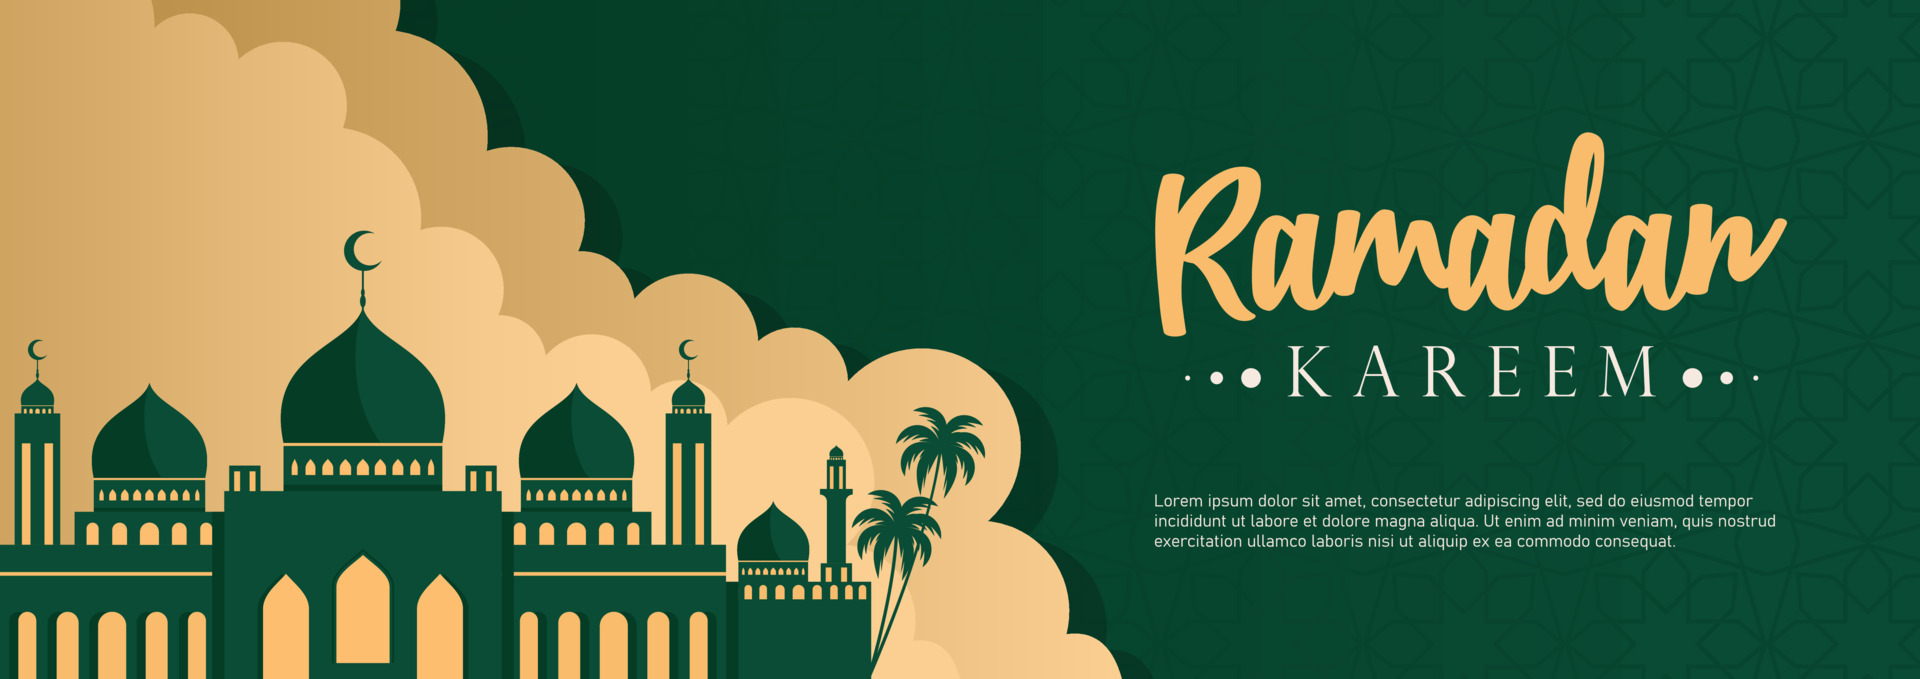 Bạn đang tìm kiếm những bộ vector ảnh bảng Ramadan miễn phí để sử dụng trong thiết kế của mình? Hãy khám phá ngay! Với những hình ảnh đầy sắc màu và đẹp mắt này, bạn sẽ không còn phải lo lắng về việc tìm kiếm những nguồn tài nguyên thiết kế tự do nữa.